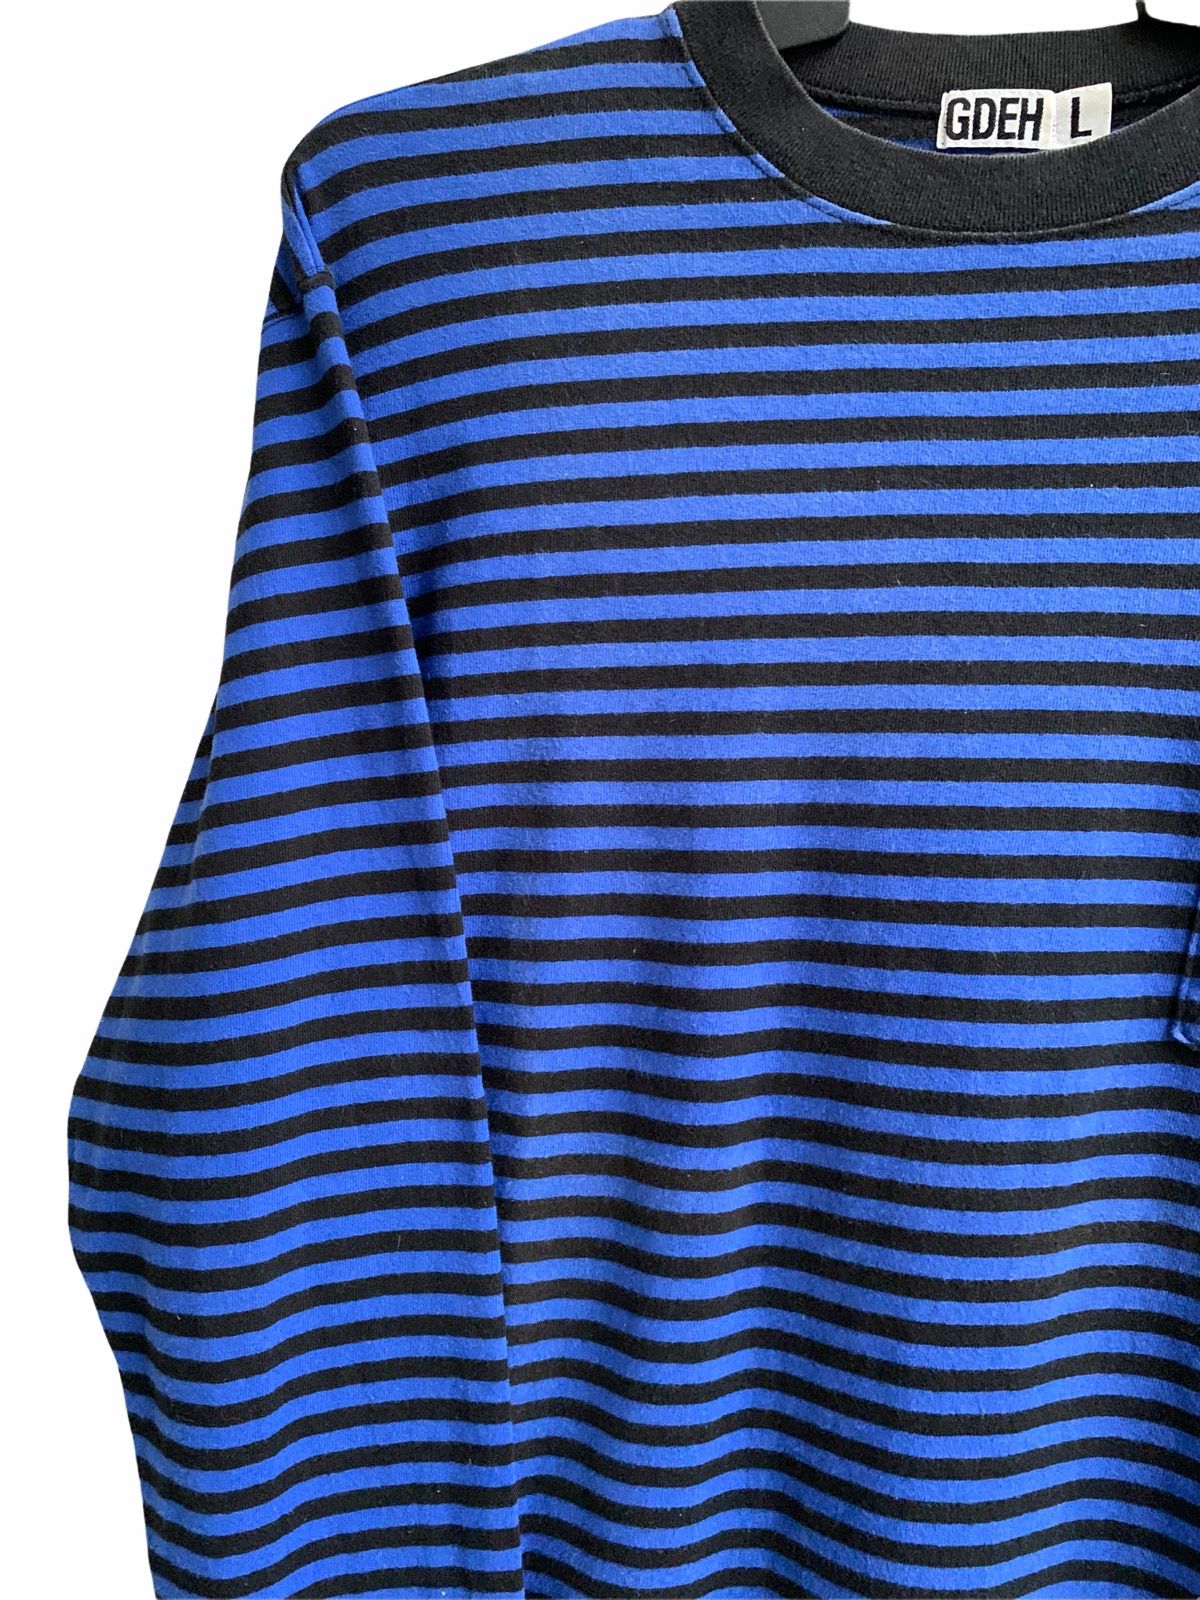 Goodenough Vinateg Good Enough Blue Striped Long Sleeve T-shirts Size US L / EU 52-54 / 3 - 7 Thumbnail